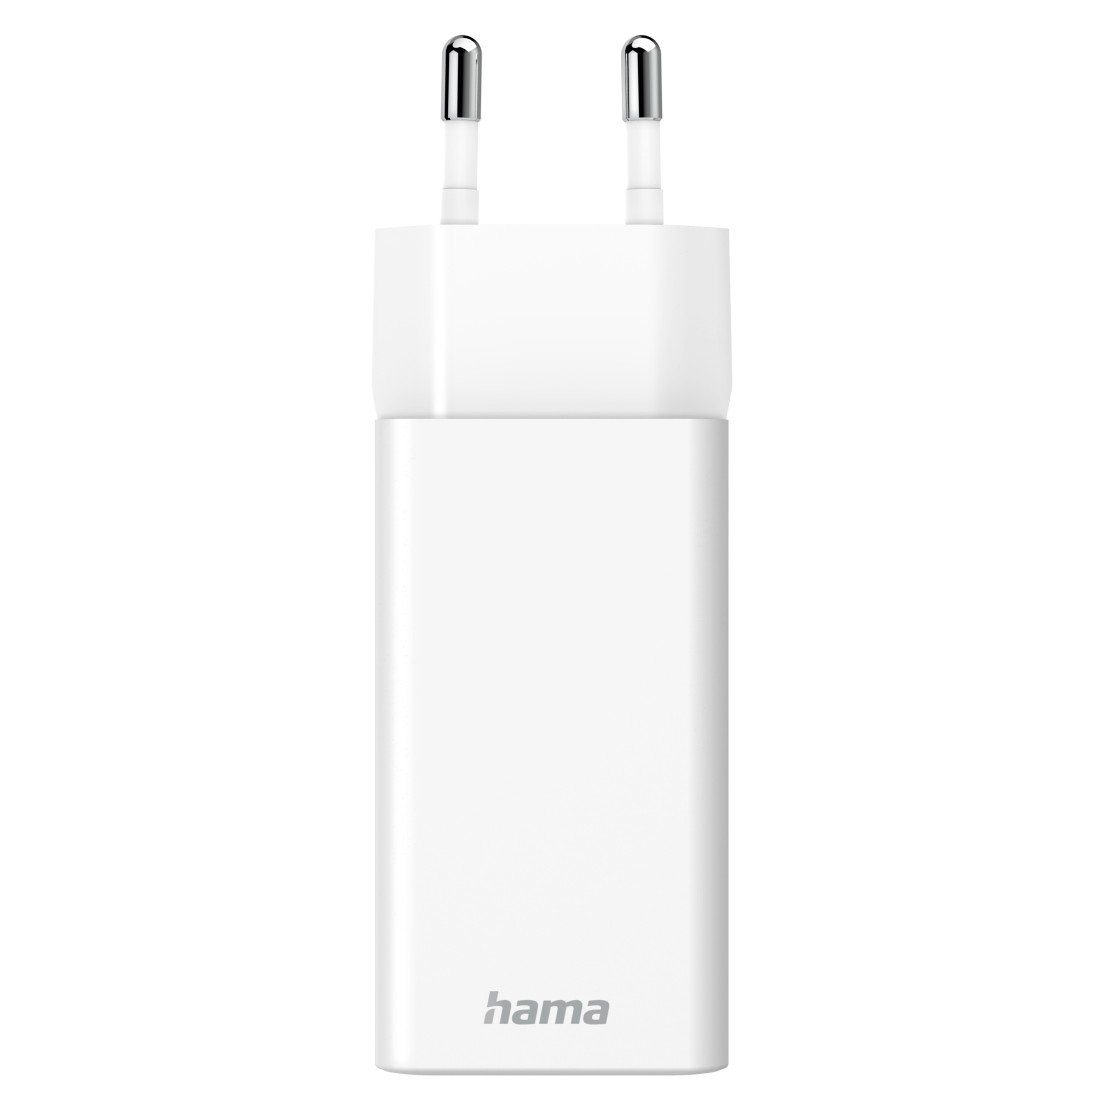 Hama 45 Watt Ladegerät Netzteil PD USB-Ladegerät USB-C, GaN Schnellladeadapter Stecker